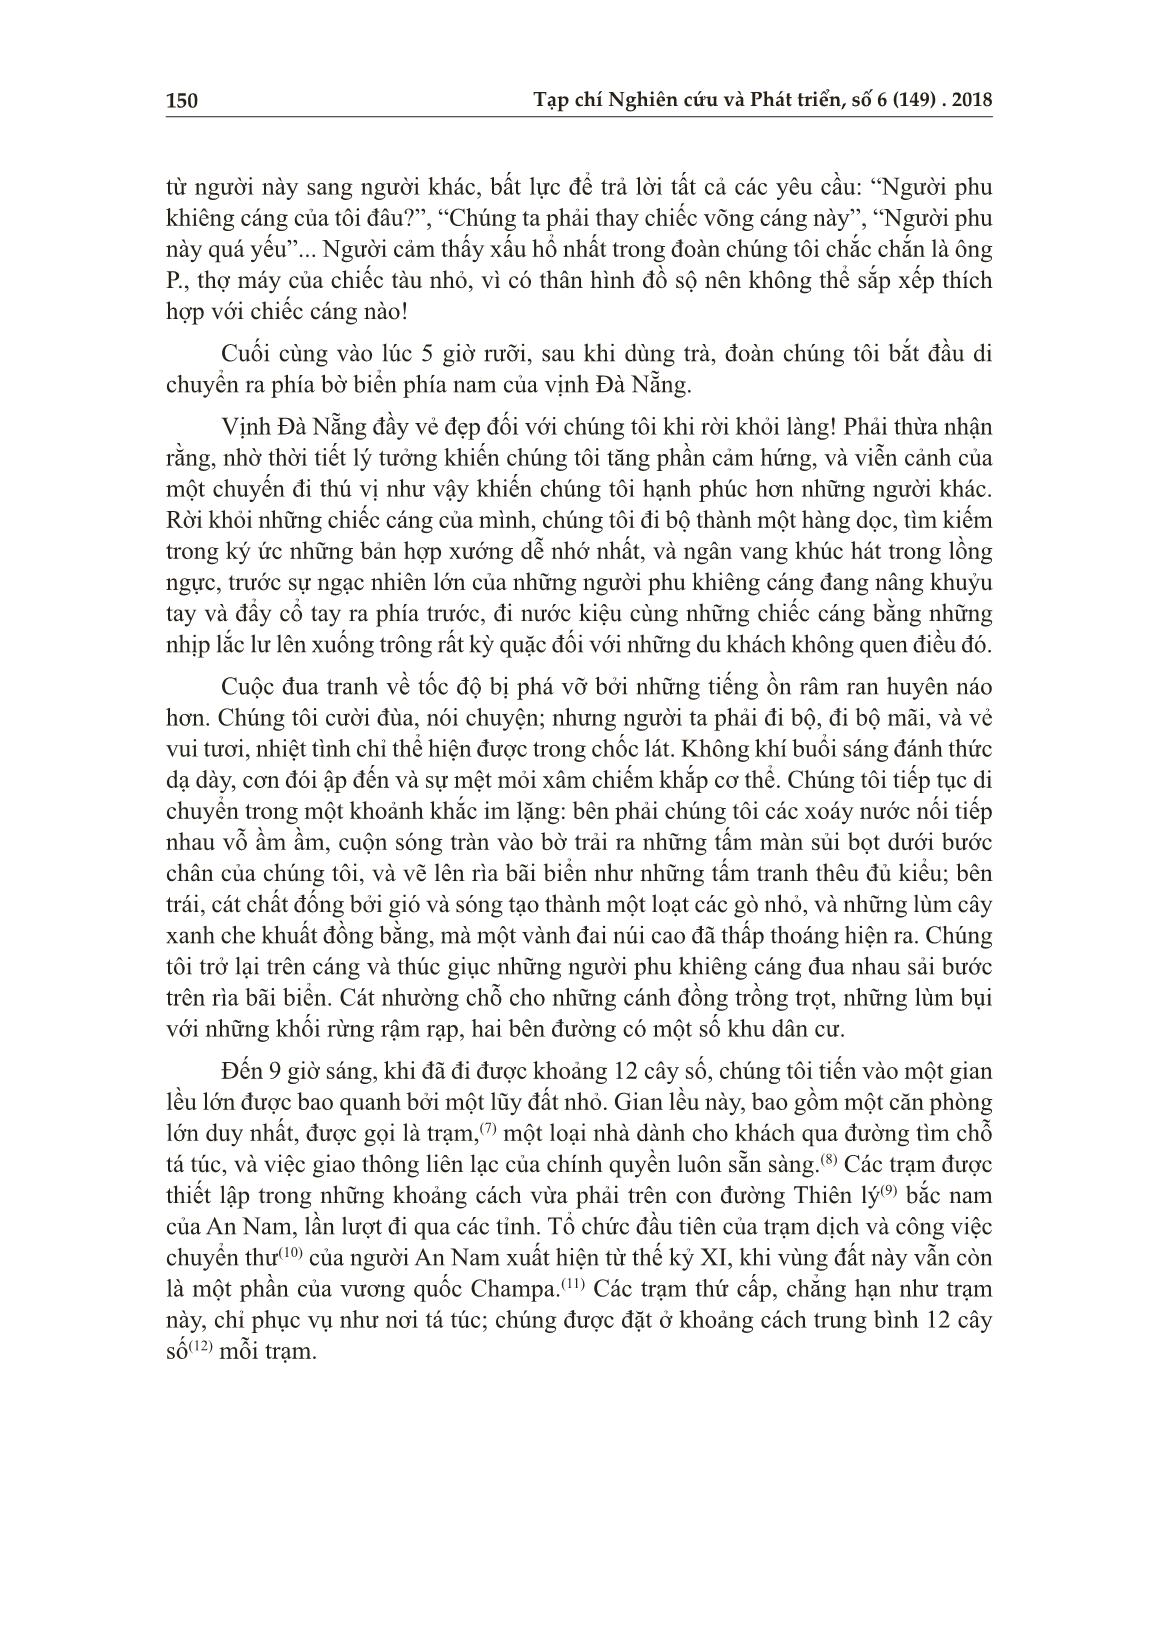 Từ đèo Hải Vân đến sông An Cựu - Huế năm 1876 trang 3